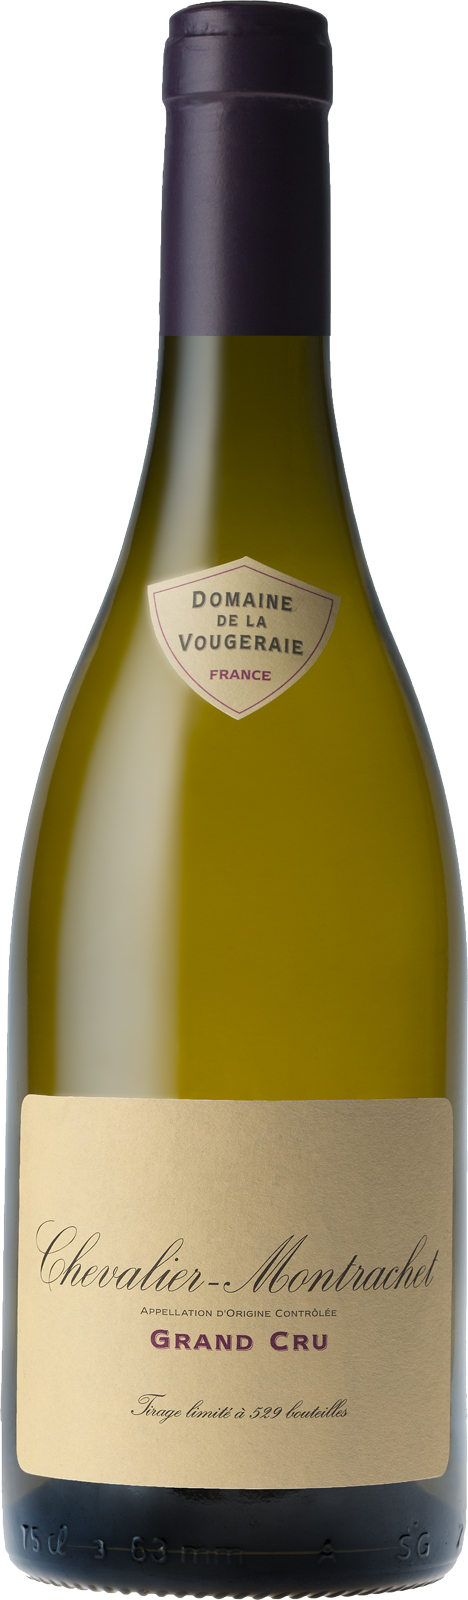 Chevalier montrachet grand cru 2017 Domaine VOUGERAIE, Bourgogne blanc